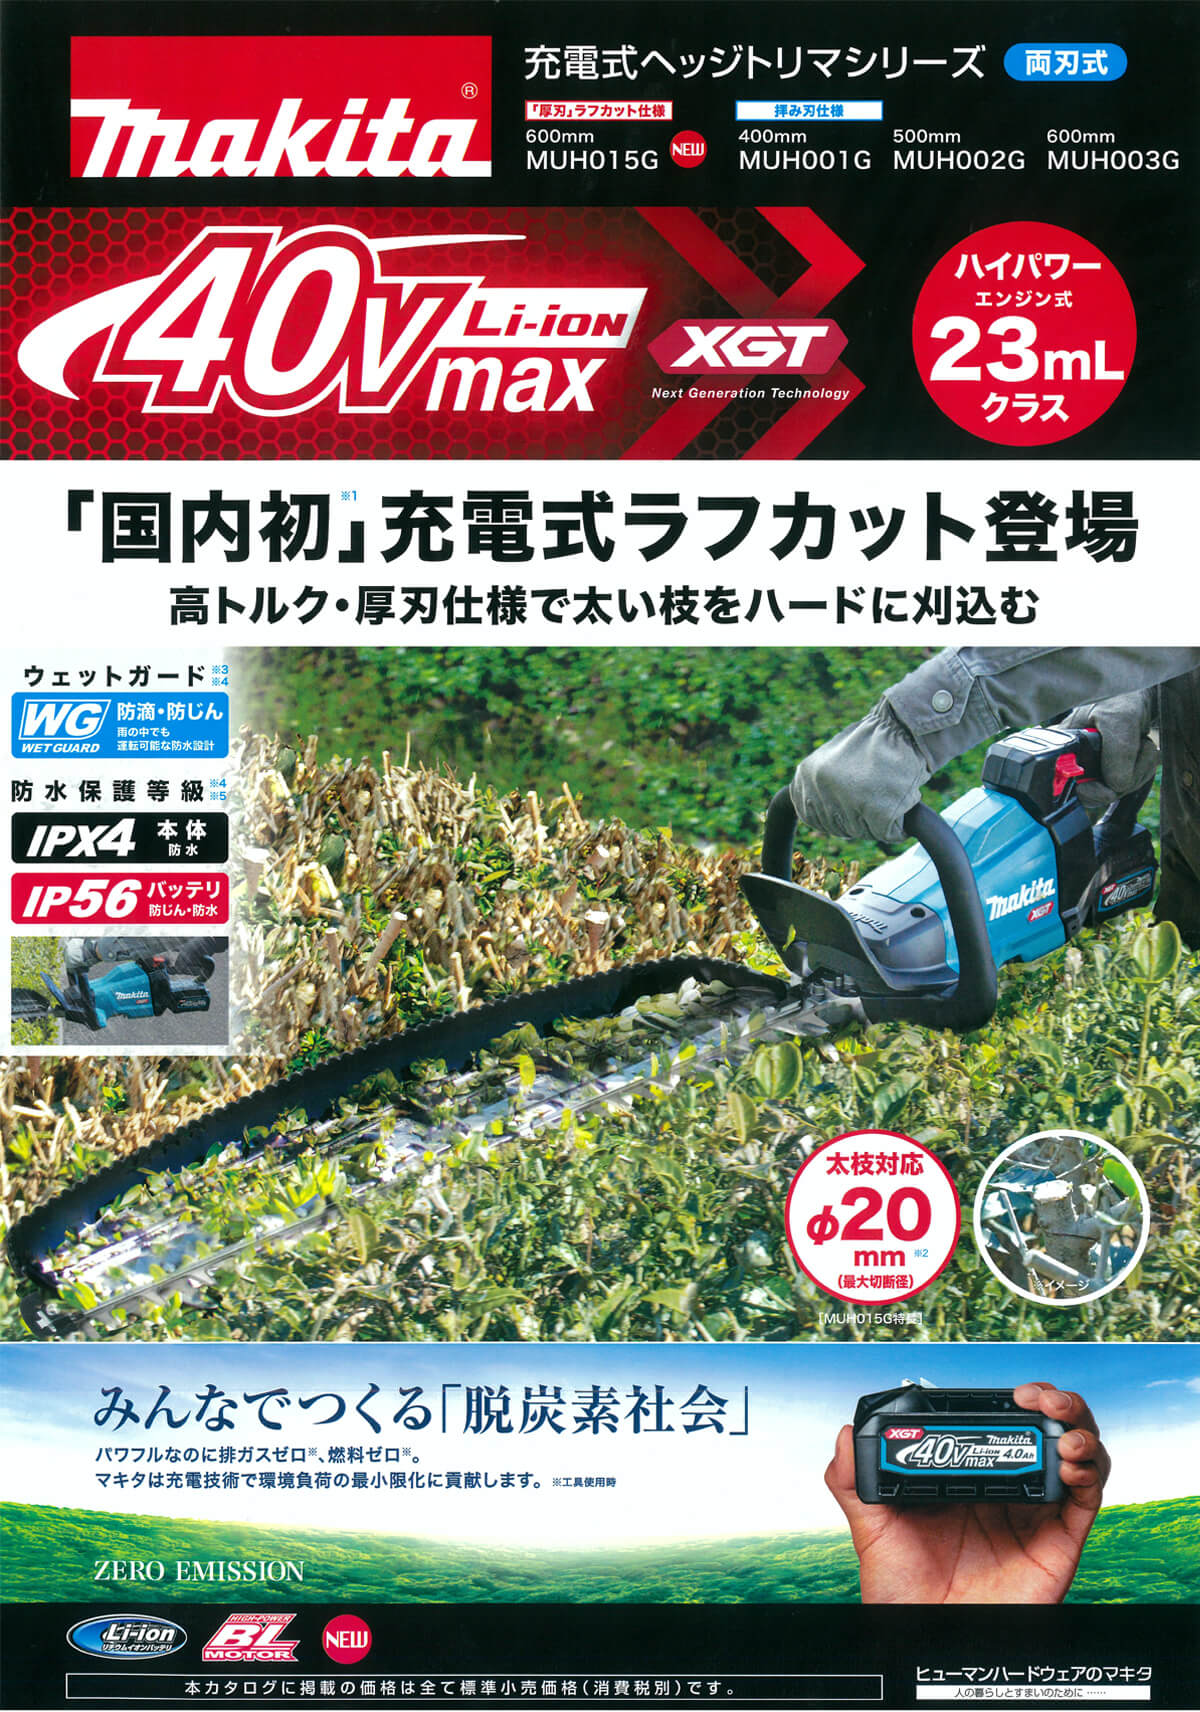 マキタ MUH015GRDX 40Vmax充電式ヘッジトリマ 600mm ウエダ金物【公式サイト】